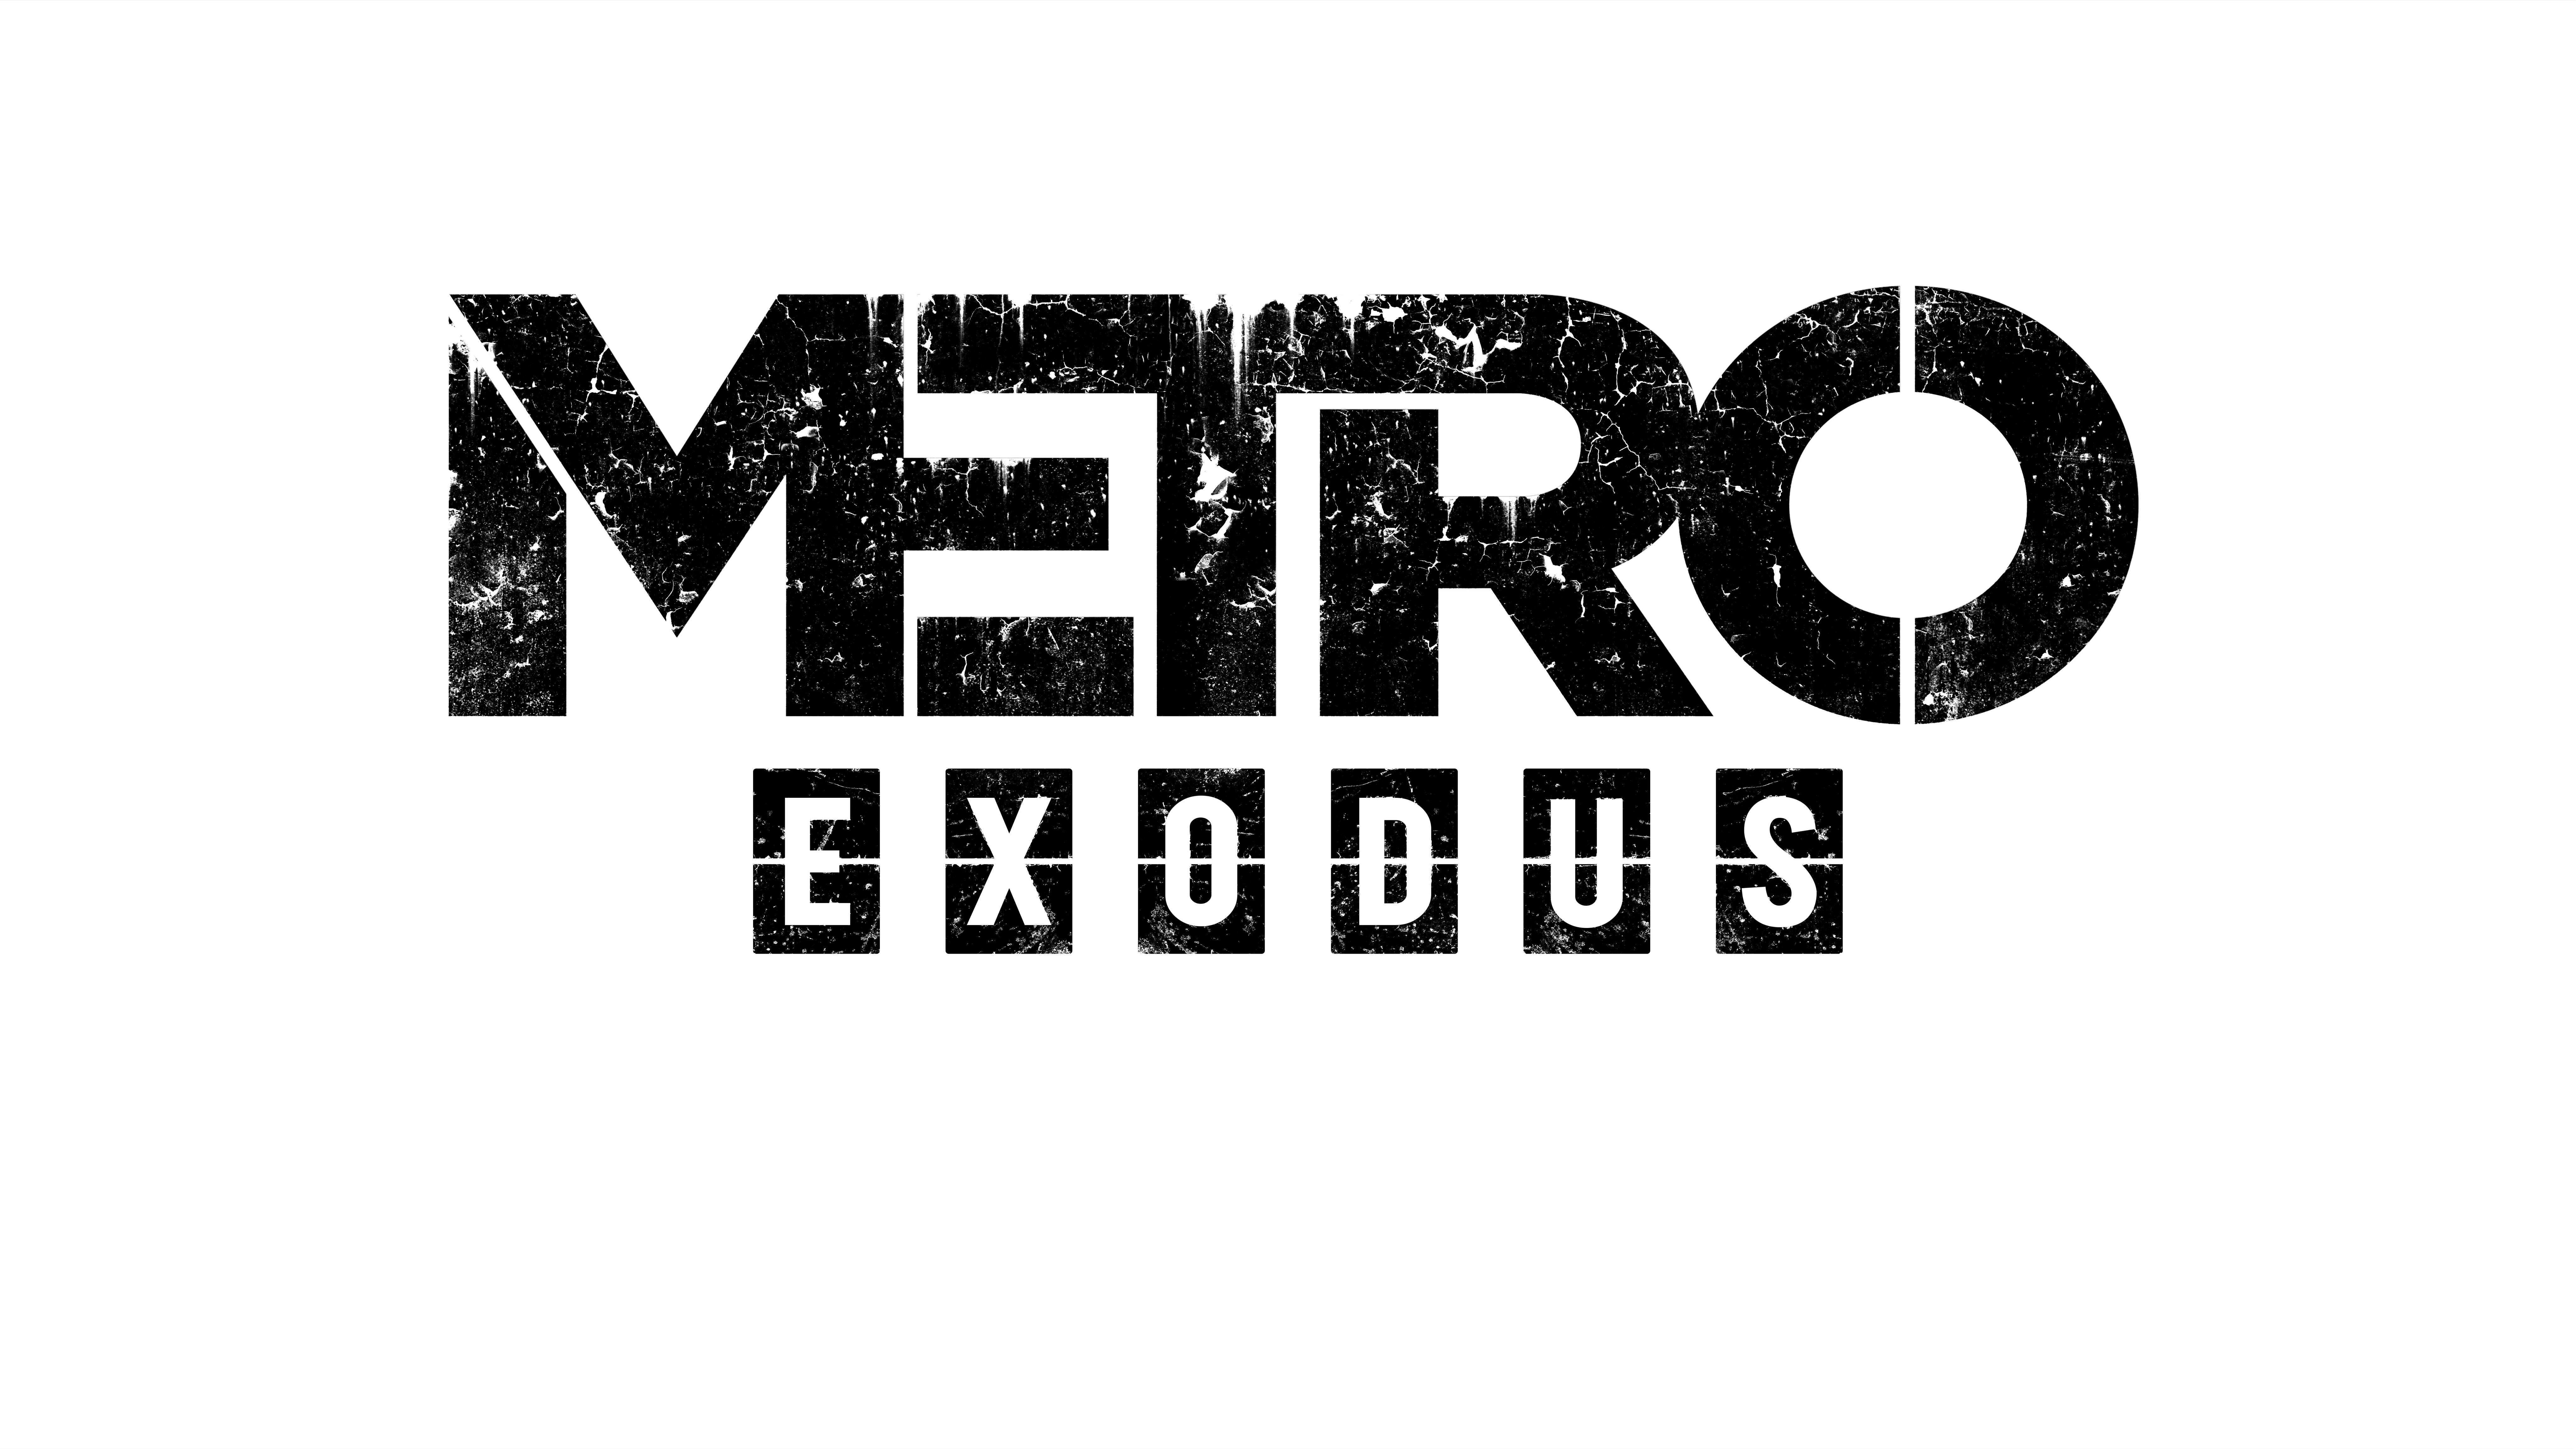 Metro Exodus Logo